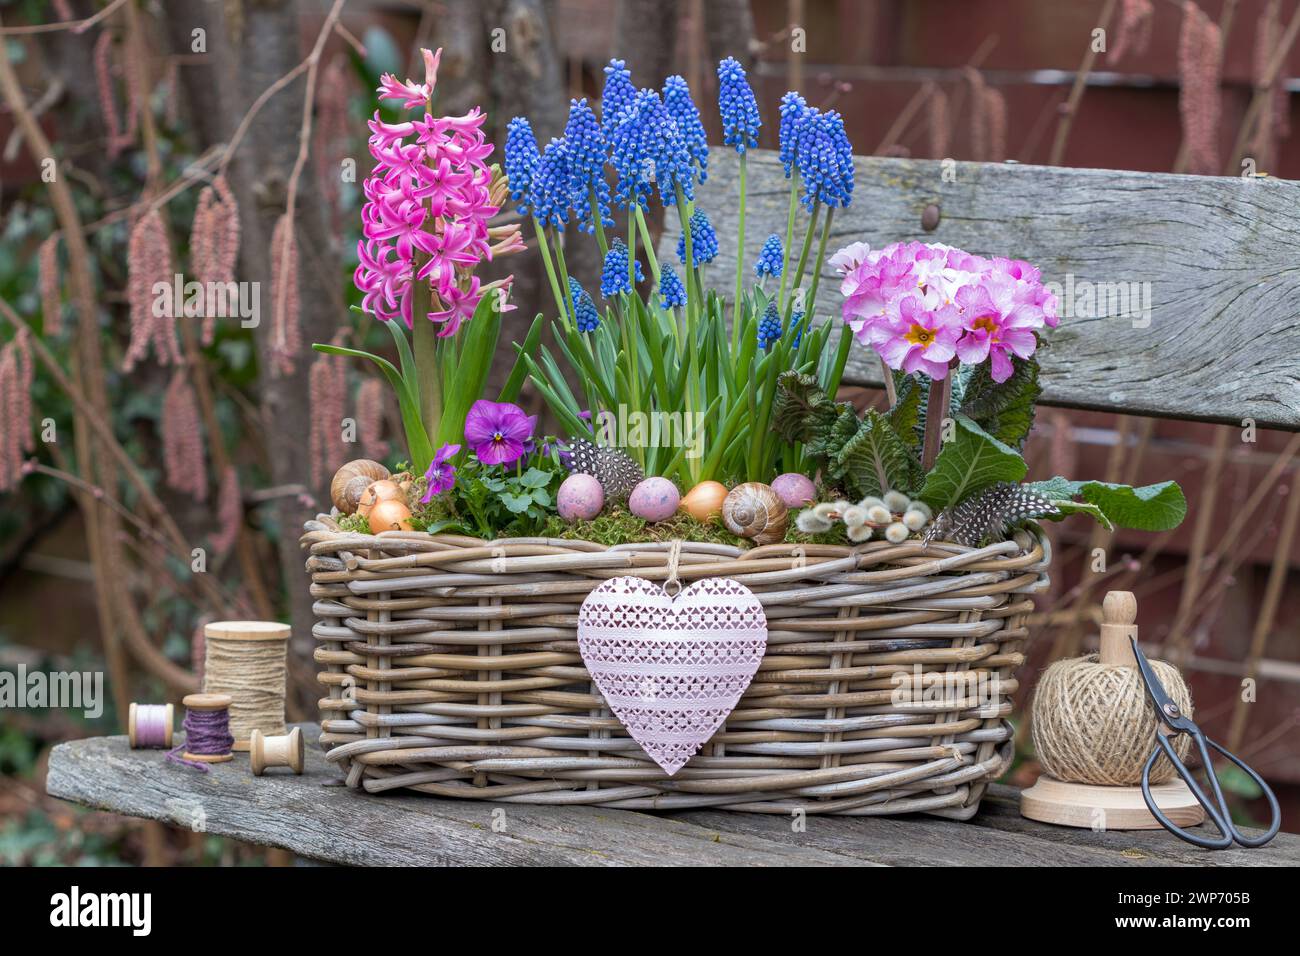 sistemazione in giardino con fiori primaverili rosa e blu in un cestino Foto Stock